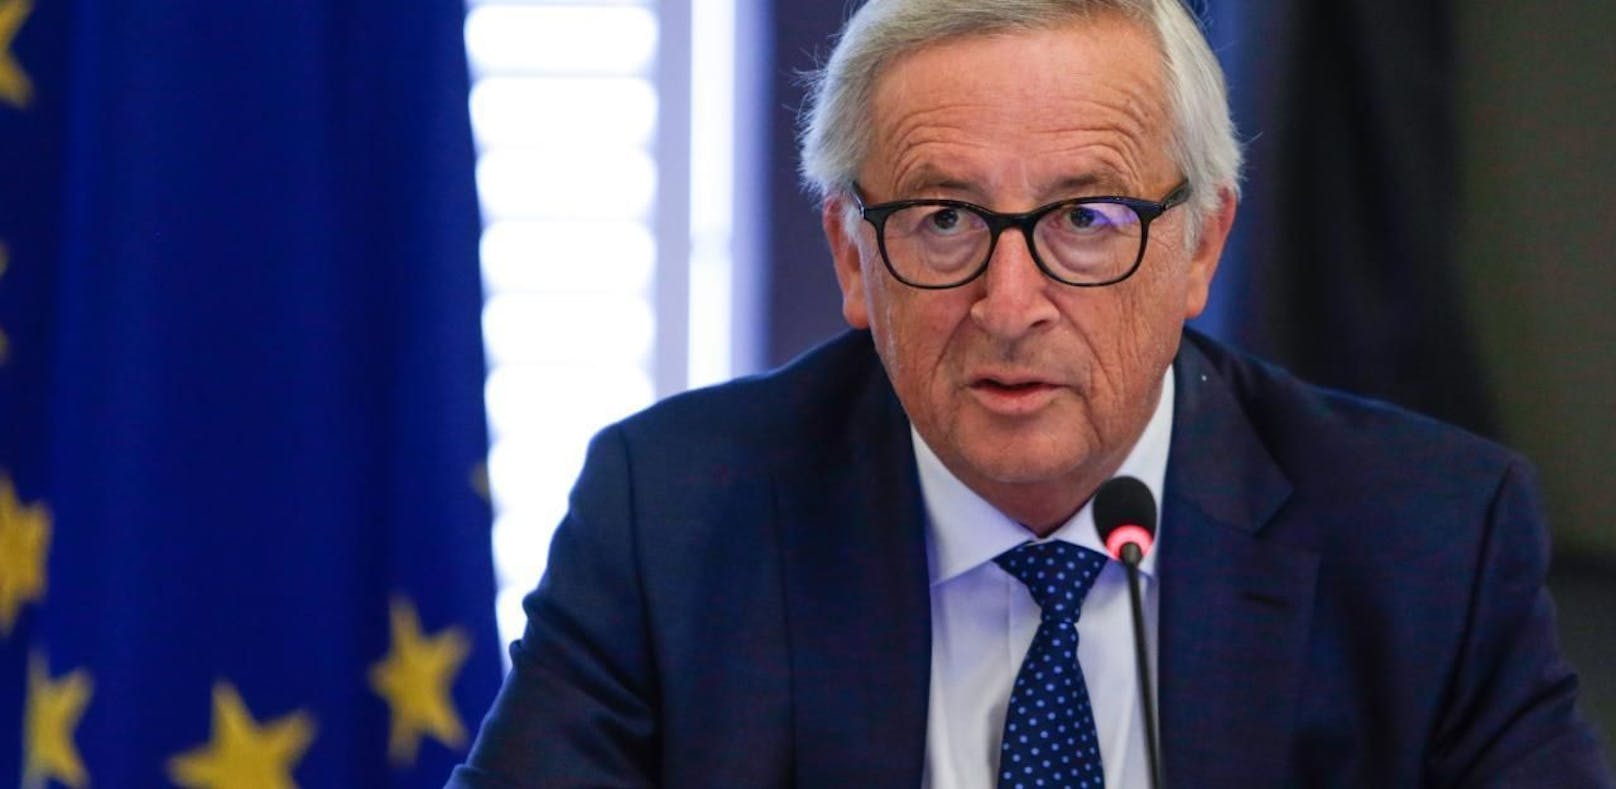 Zeitumstellung – Juncker kündigt Abschaffung an